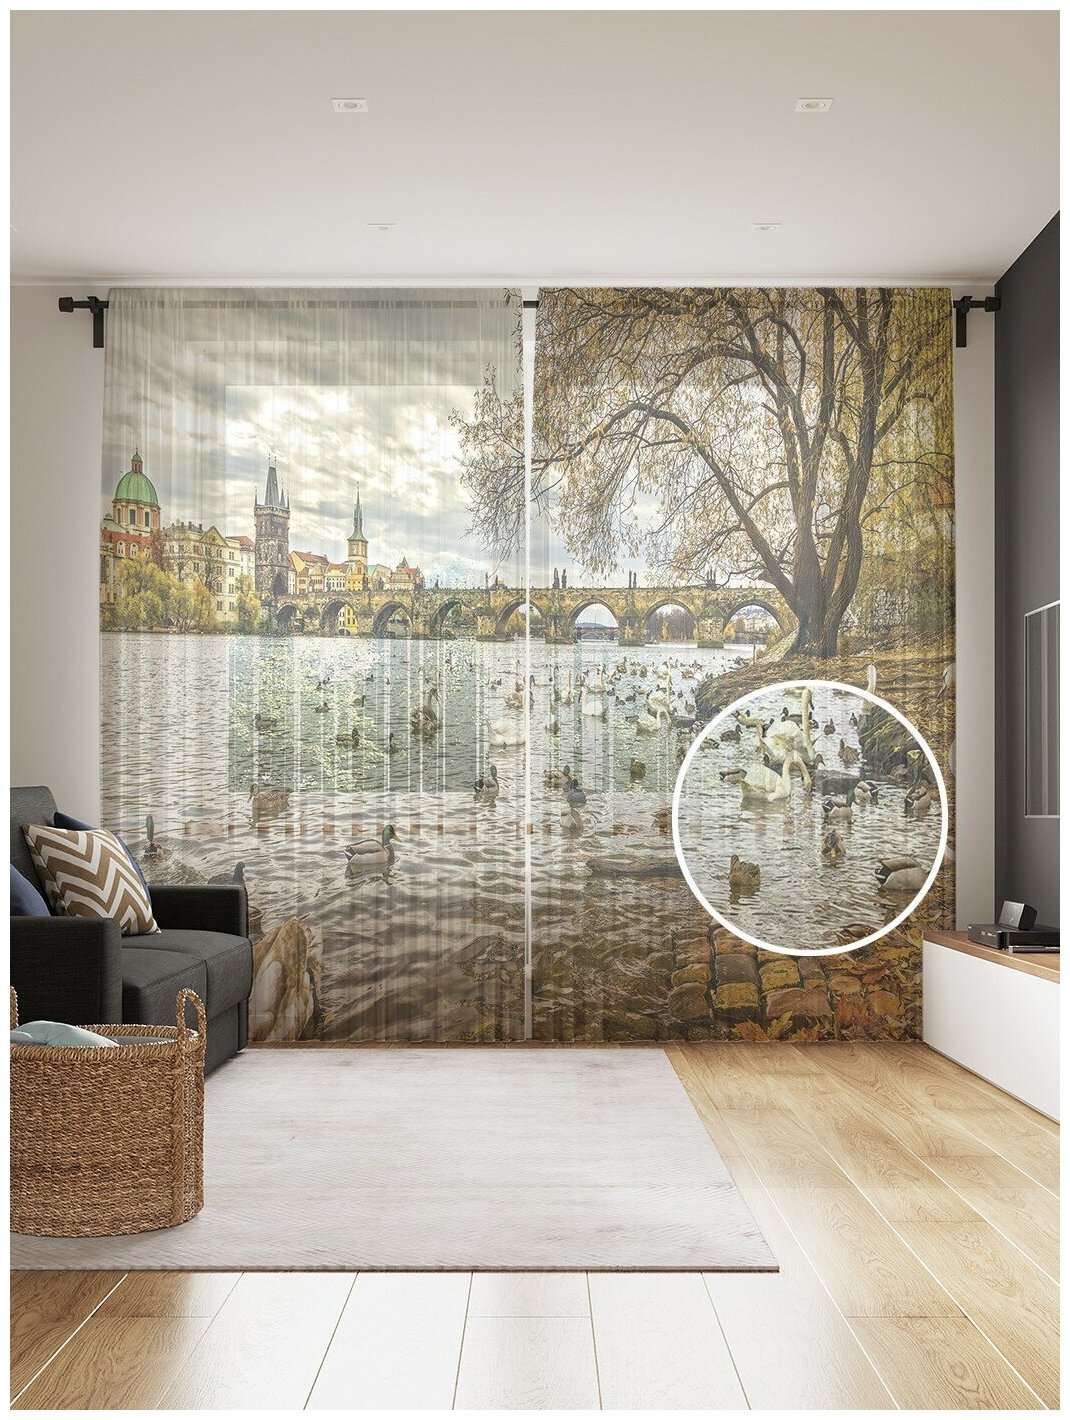 Фототюль JoyArty "Лебединая стая на реке", 145x265см (2 полотна со шторной лентой + 50 крючков)